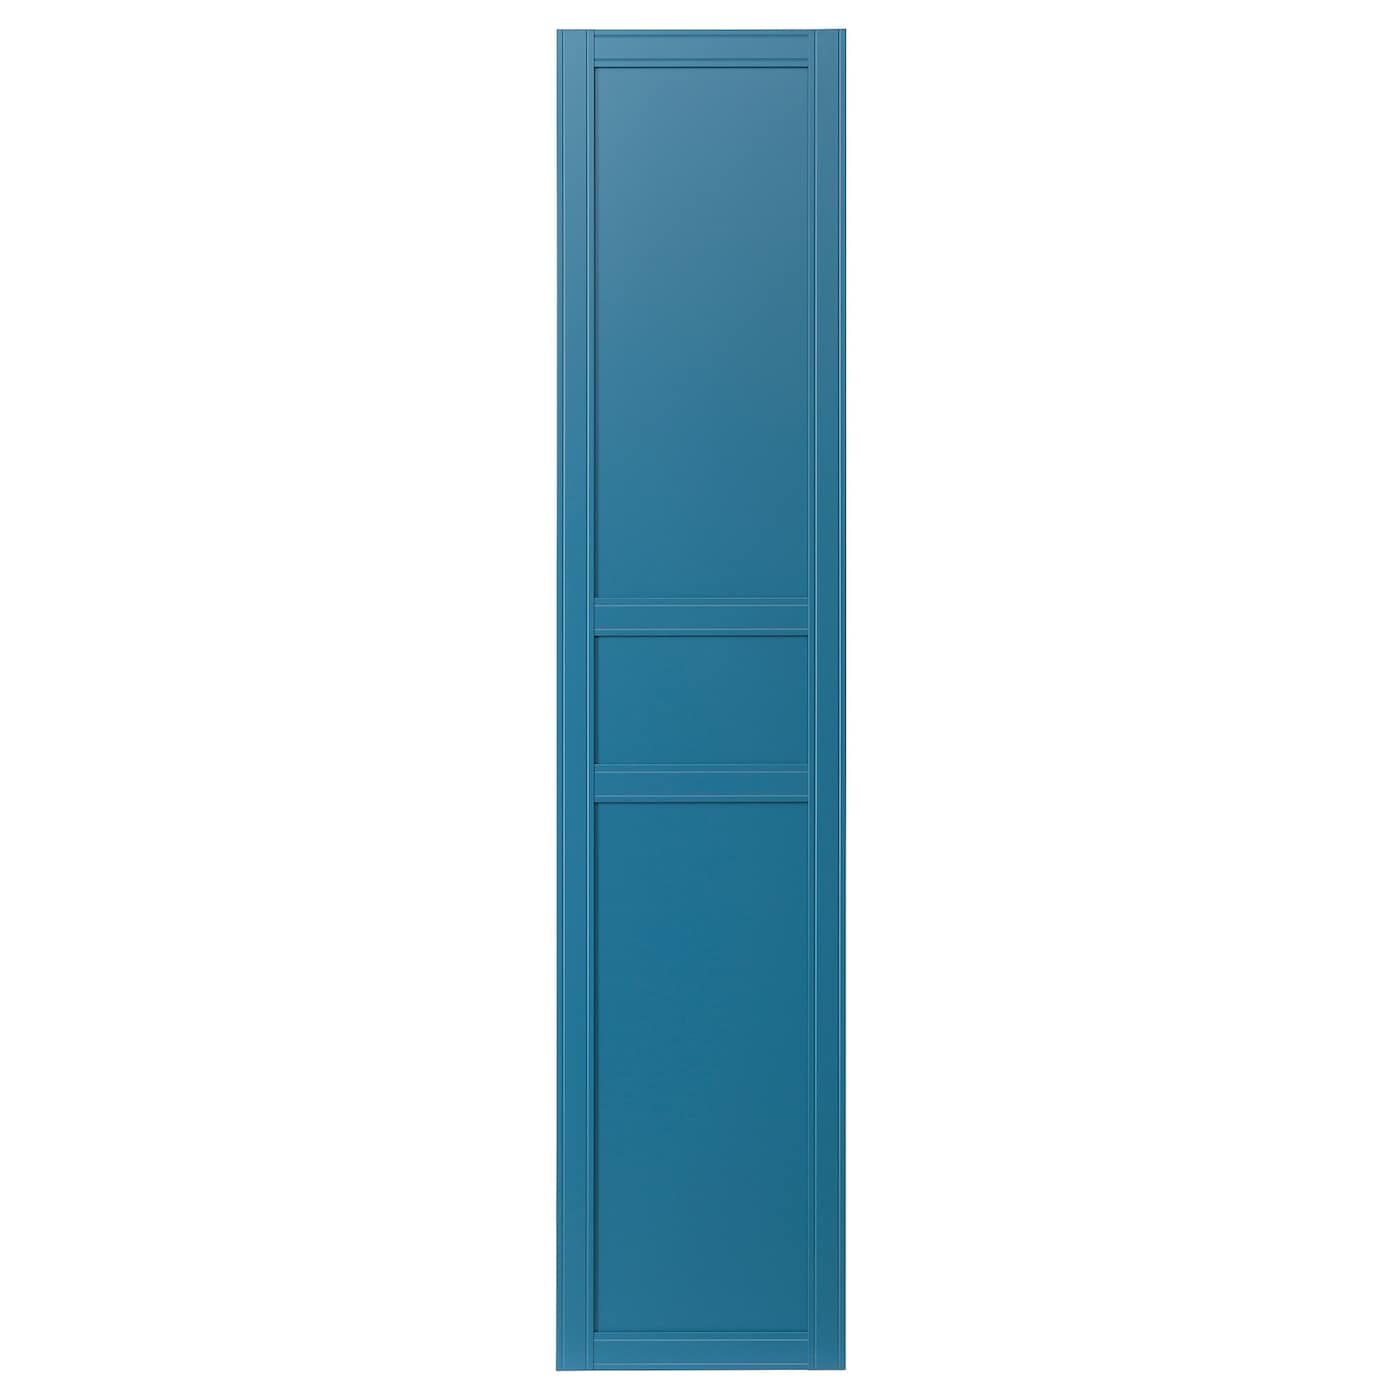 Дверца шкафа - FLISBERGET IKEA/ФЛИСБЕРГЕТ ИКЕА, 50х229 см, синий